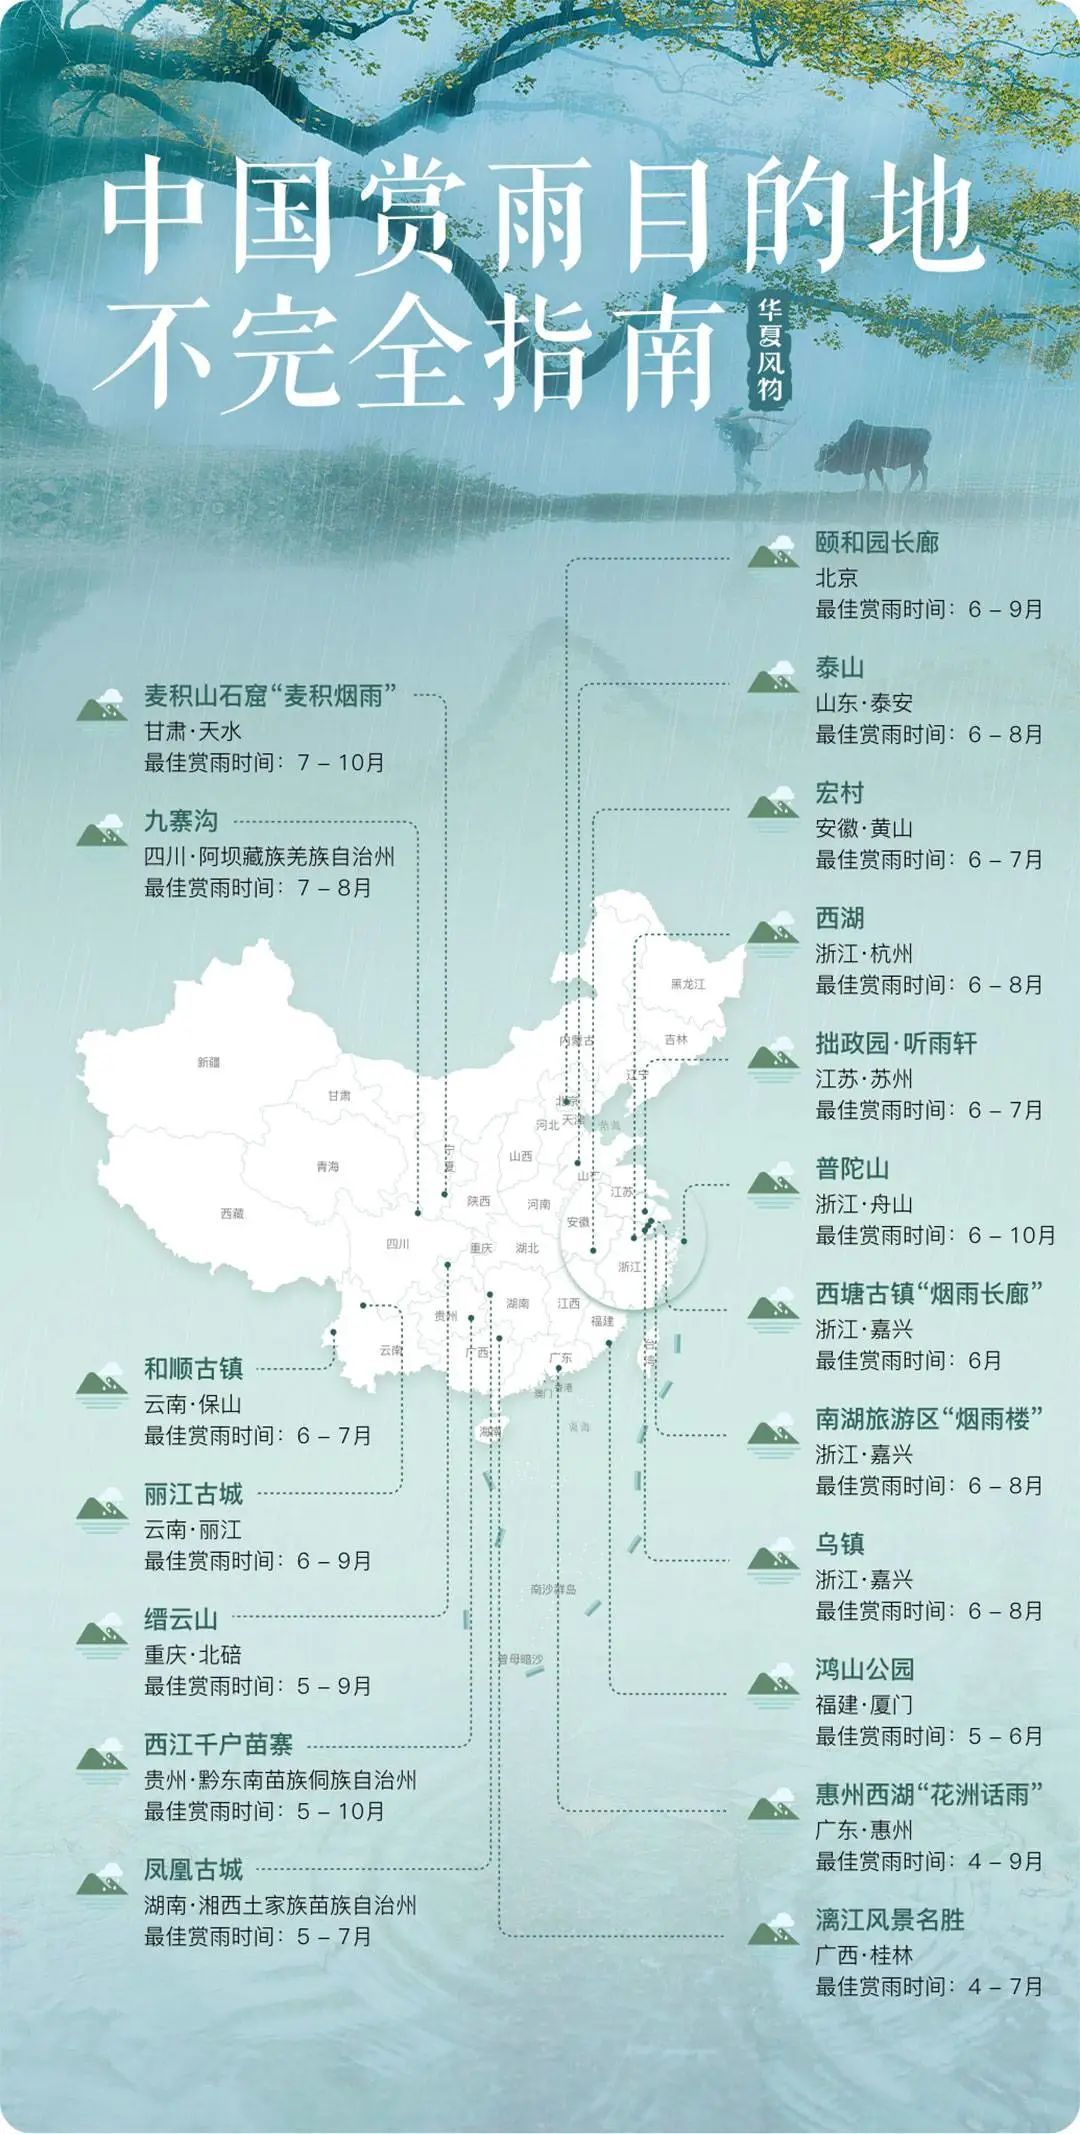 中国赏雨目的地不完全指南 ©华夏风物